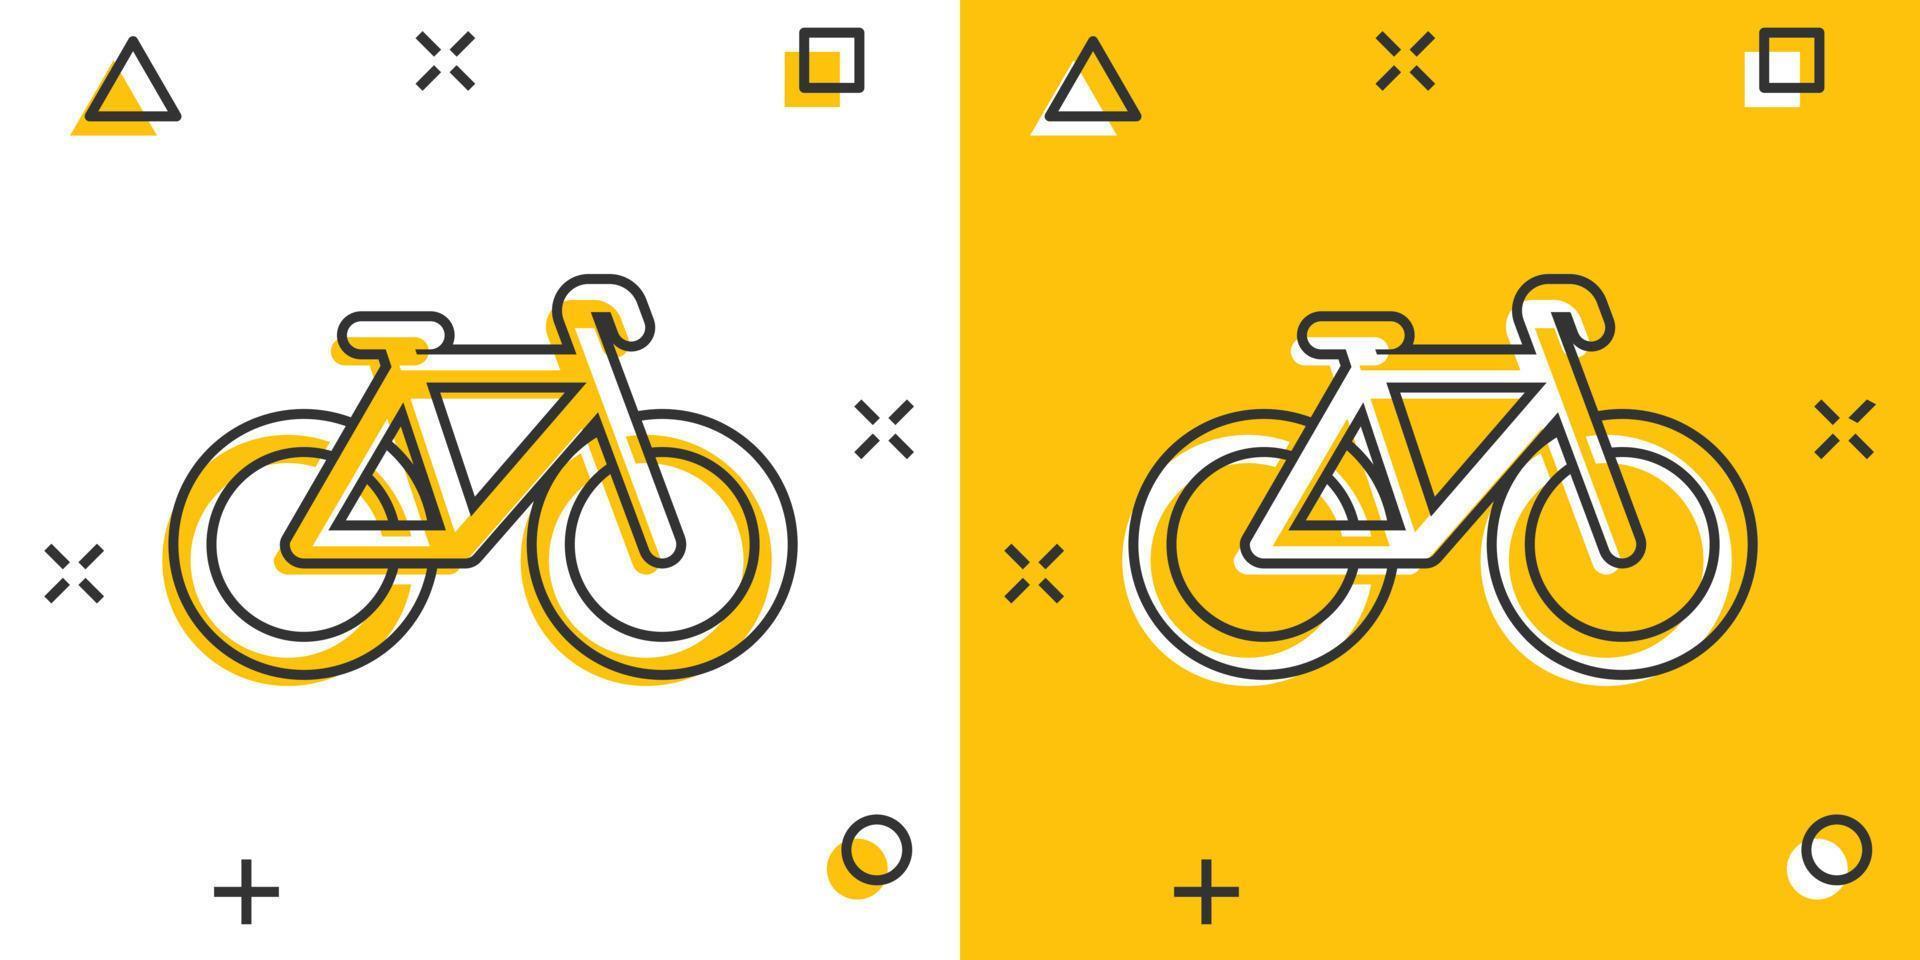 icono de bicicleta en estilo cómico. ilustración de vector de dibujos animados de bicicleta sobre fondo blanco aislado. concepto de negocio de efecto de salpicadura de viaje en bicicleta.